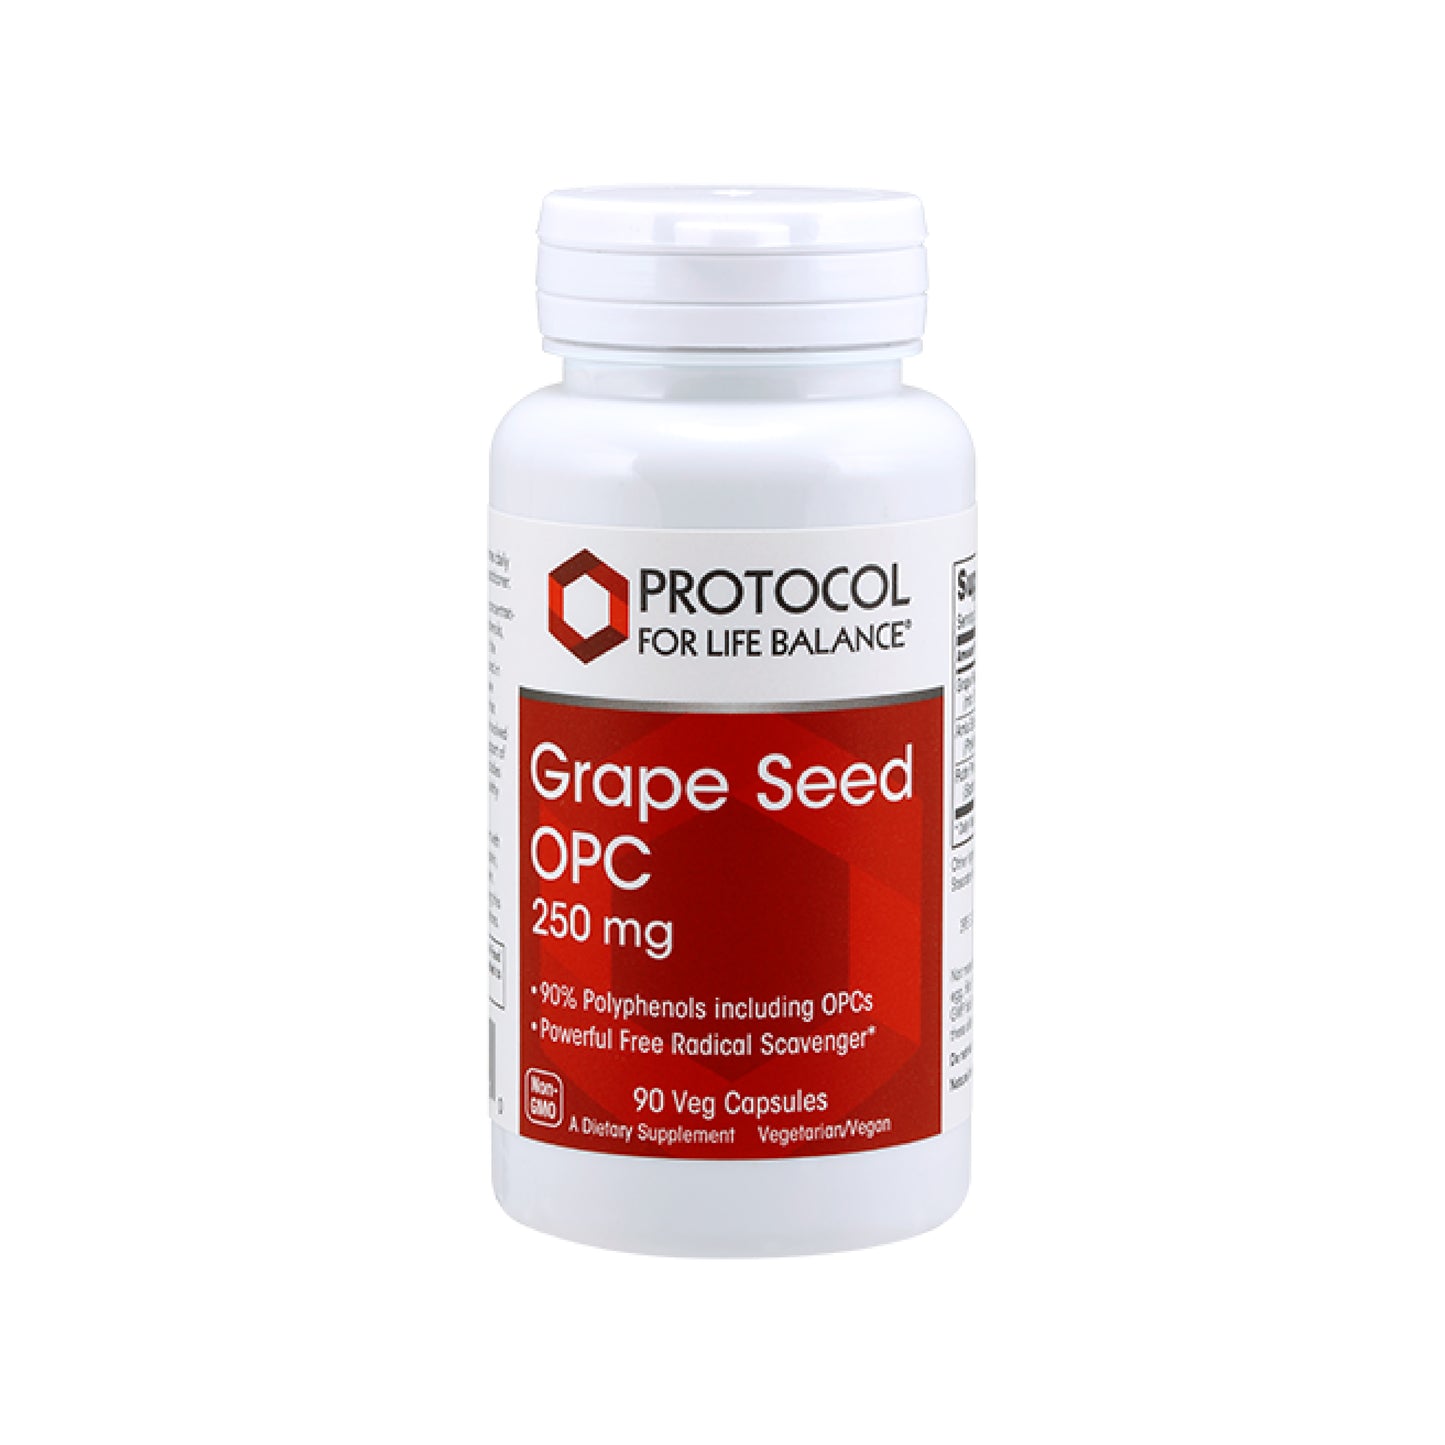 Protocol for Life Balance, Grape Seed OPC 250 mg, 90 Veg Capsules - Bloom Concept